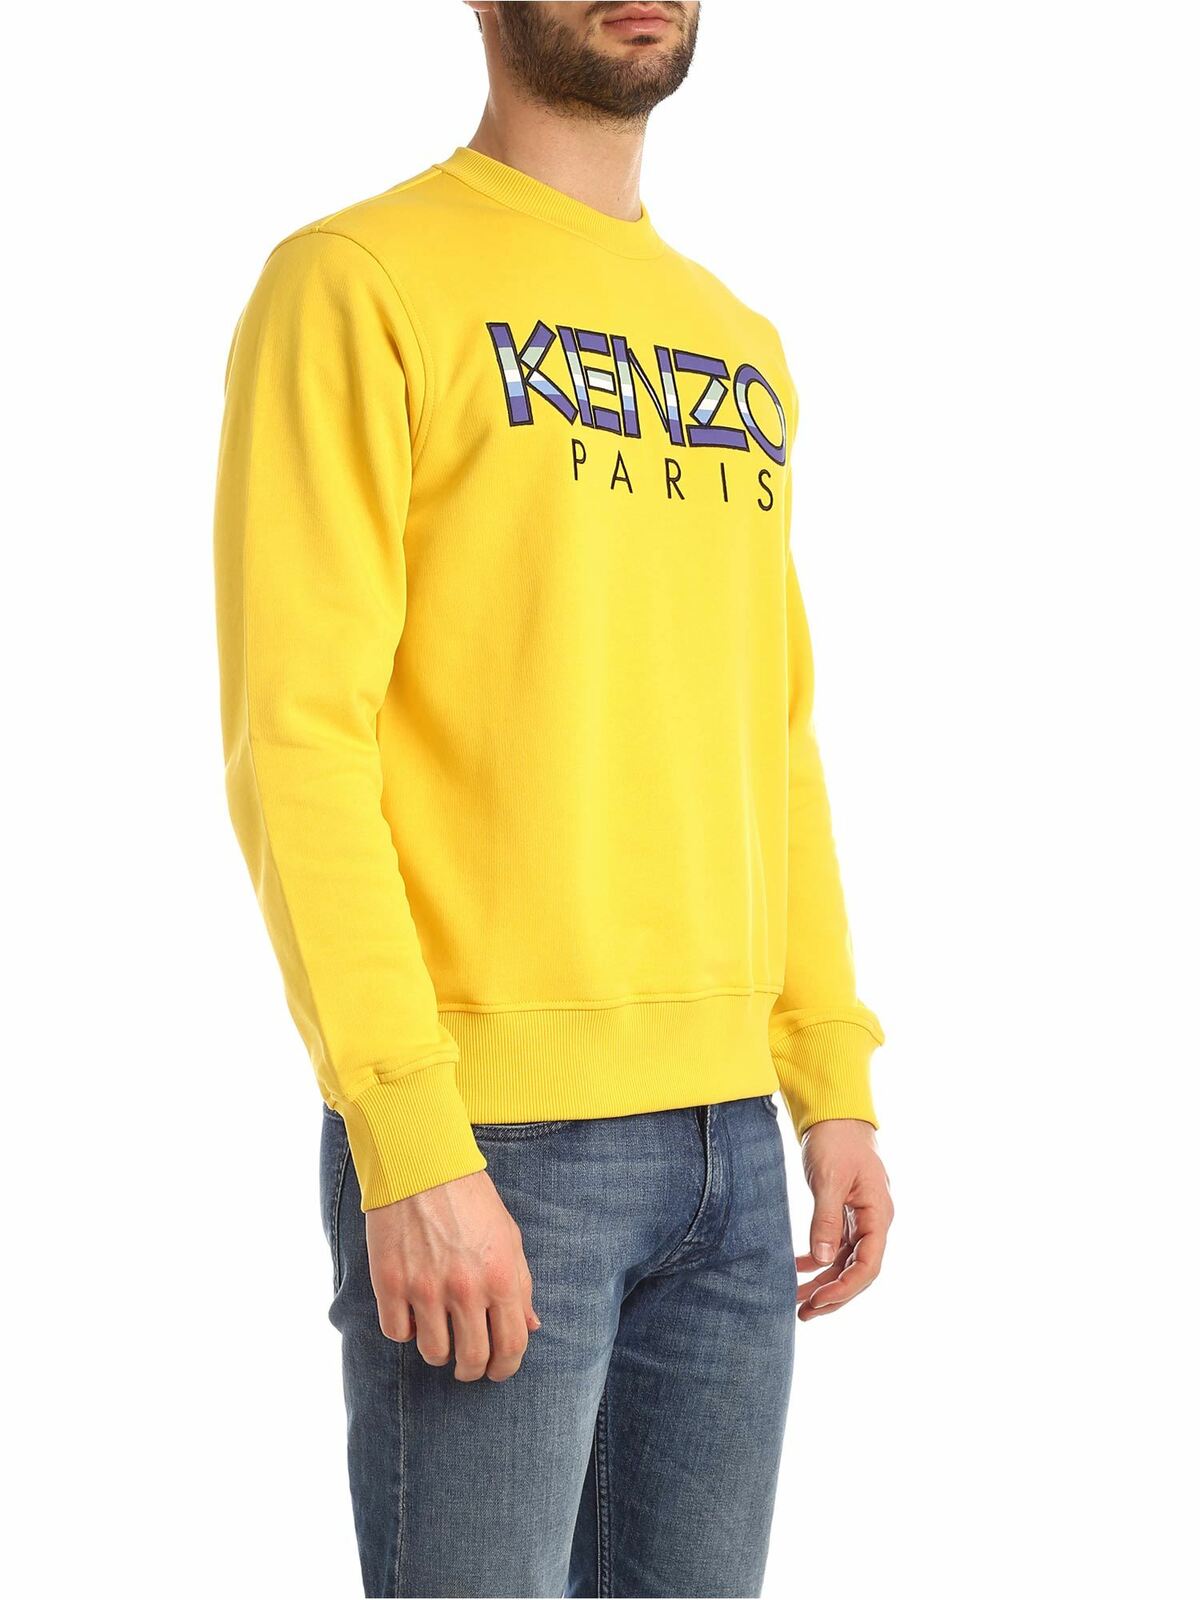 Verbinding verbroken Opstand het dossier Sweatshirts & Sweaters Kenzo - Kenzo Paris sweatshirt in yellow -  5SW0004MD39